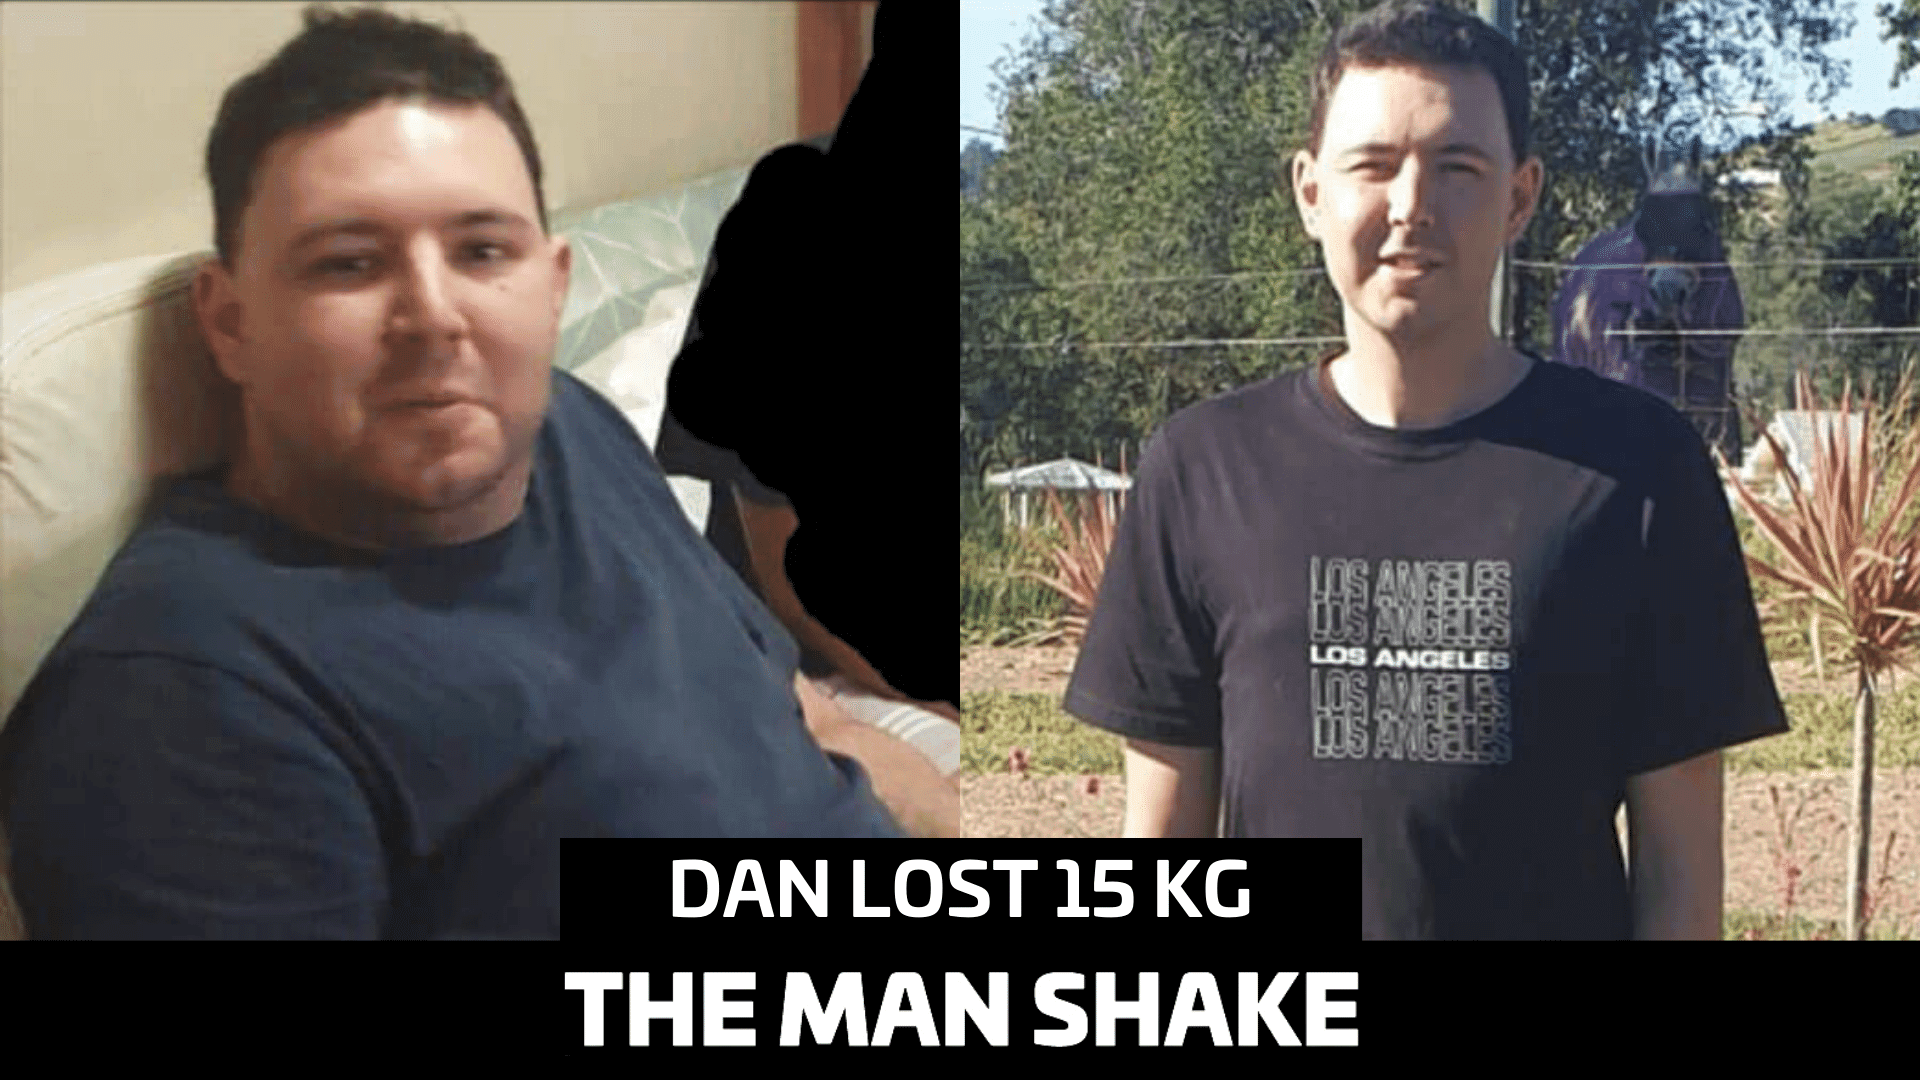 Dan lost 15kg in 13 weeks!